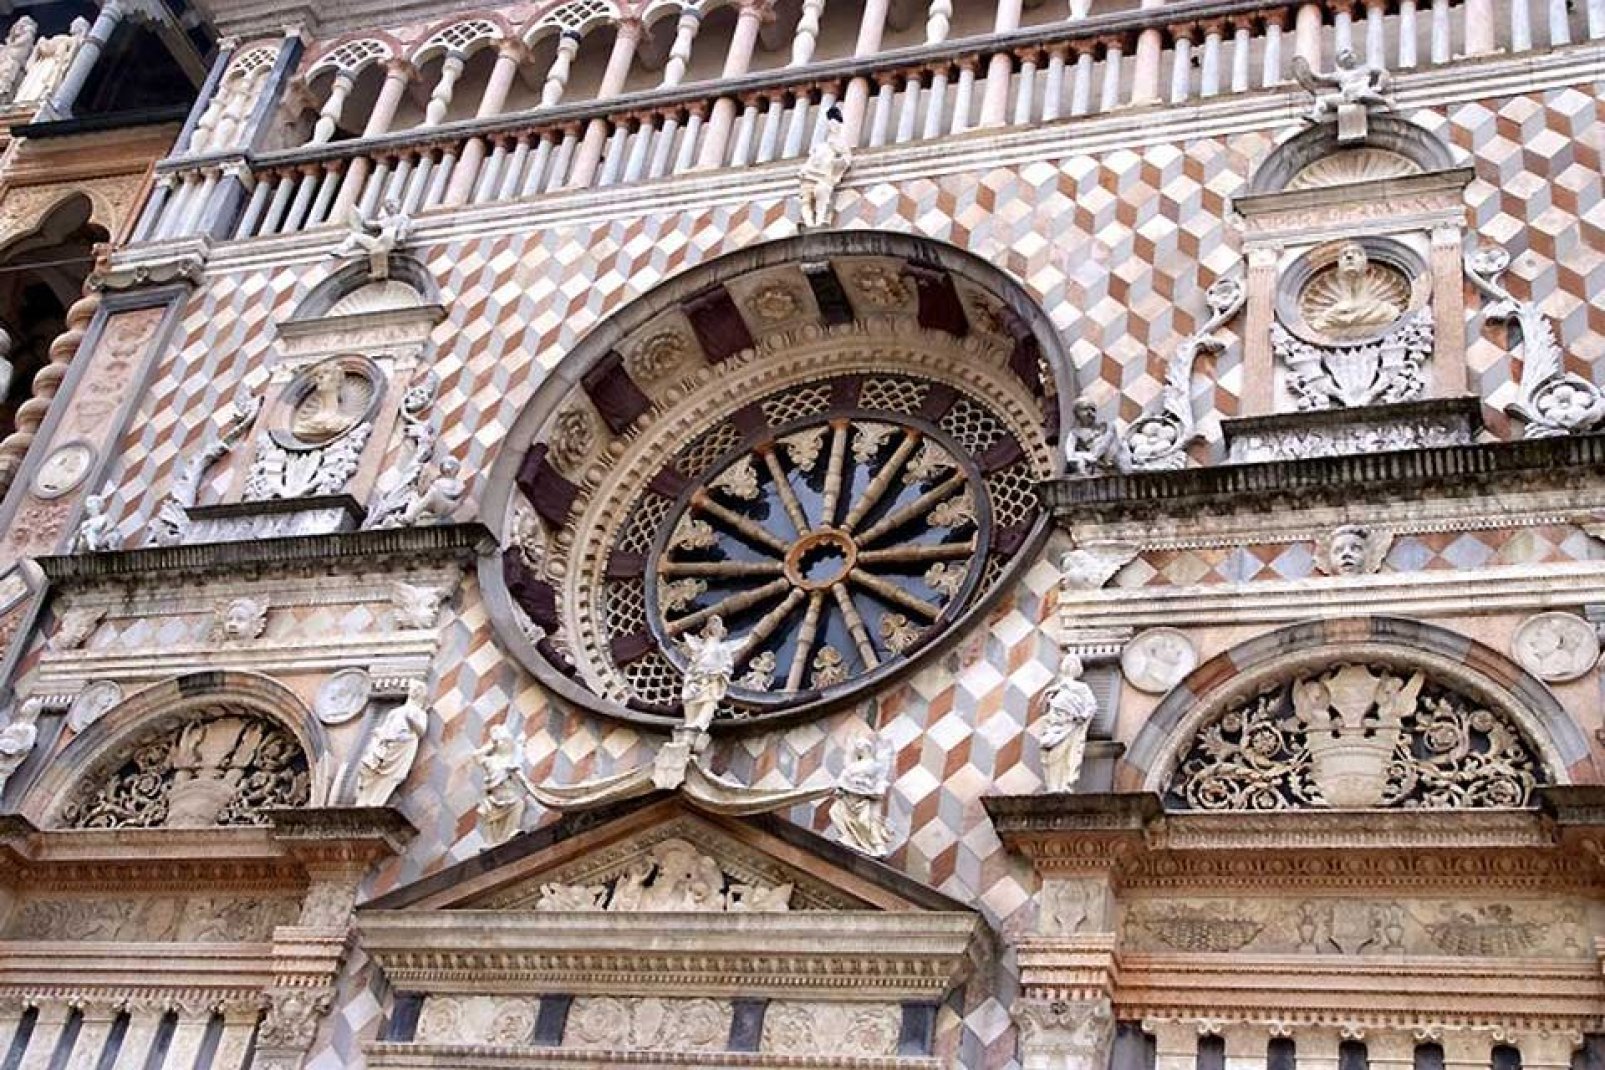 La capilla Colleoni, una joya renacentista, adosada a la basílica de Santa María la Mayor, fue comanditada por Bartolomeo Colleoni para que sirviera de mausoleo para él mismo y su hija.